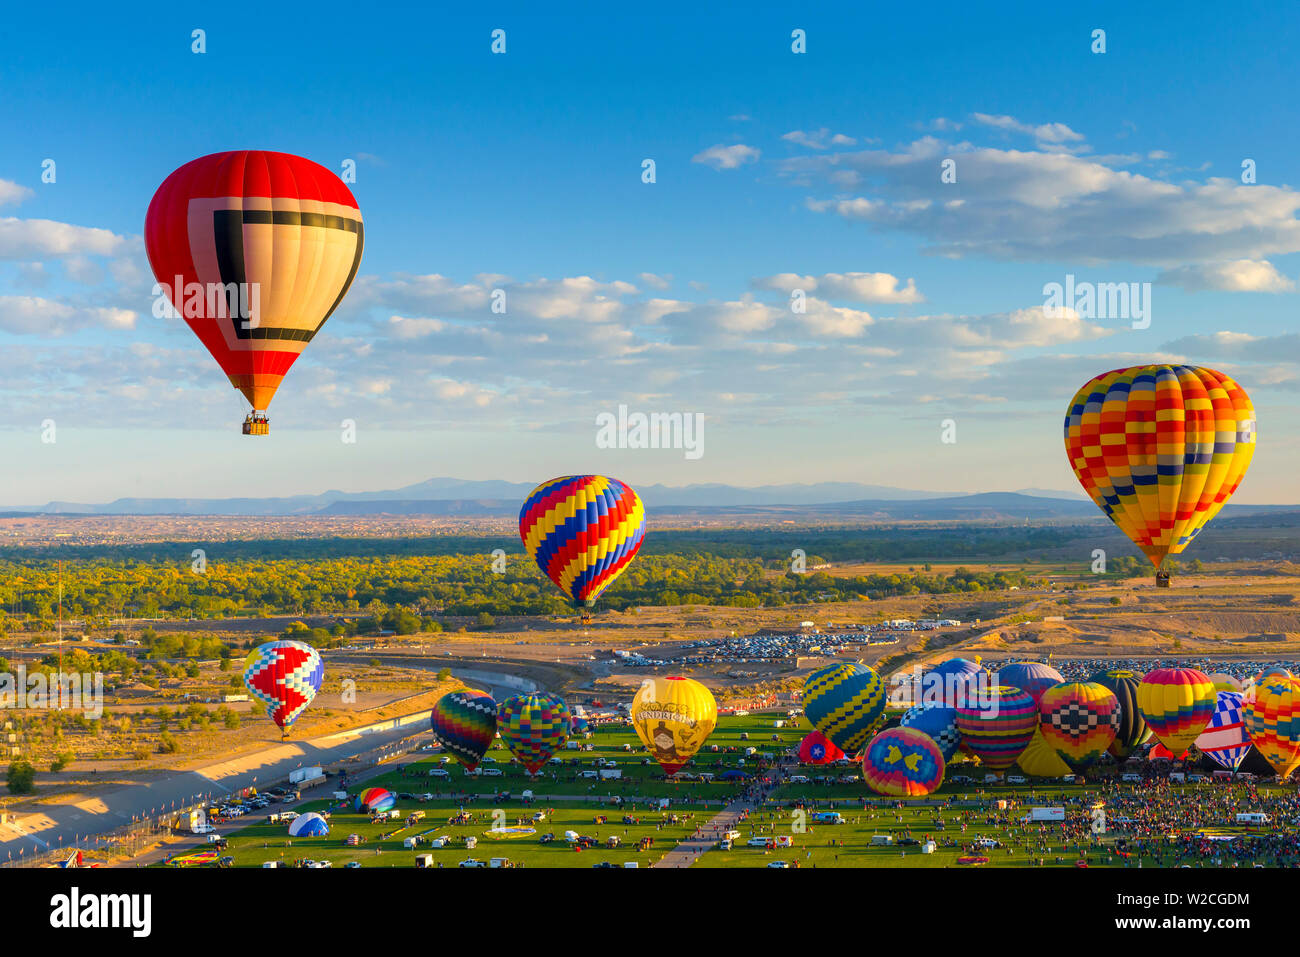 USA, New Mexico, Albuquerque, Albuquerque International Balloon Fiesta Stock Photo